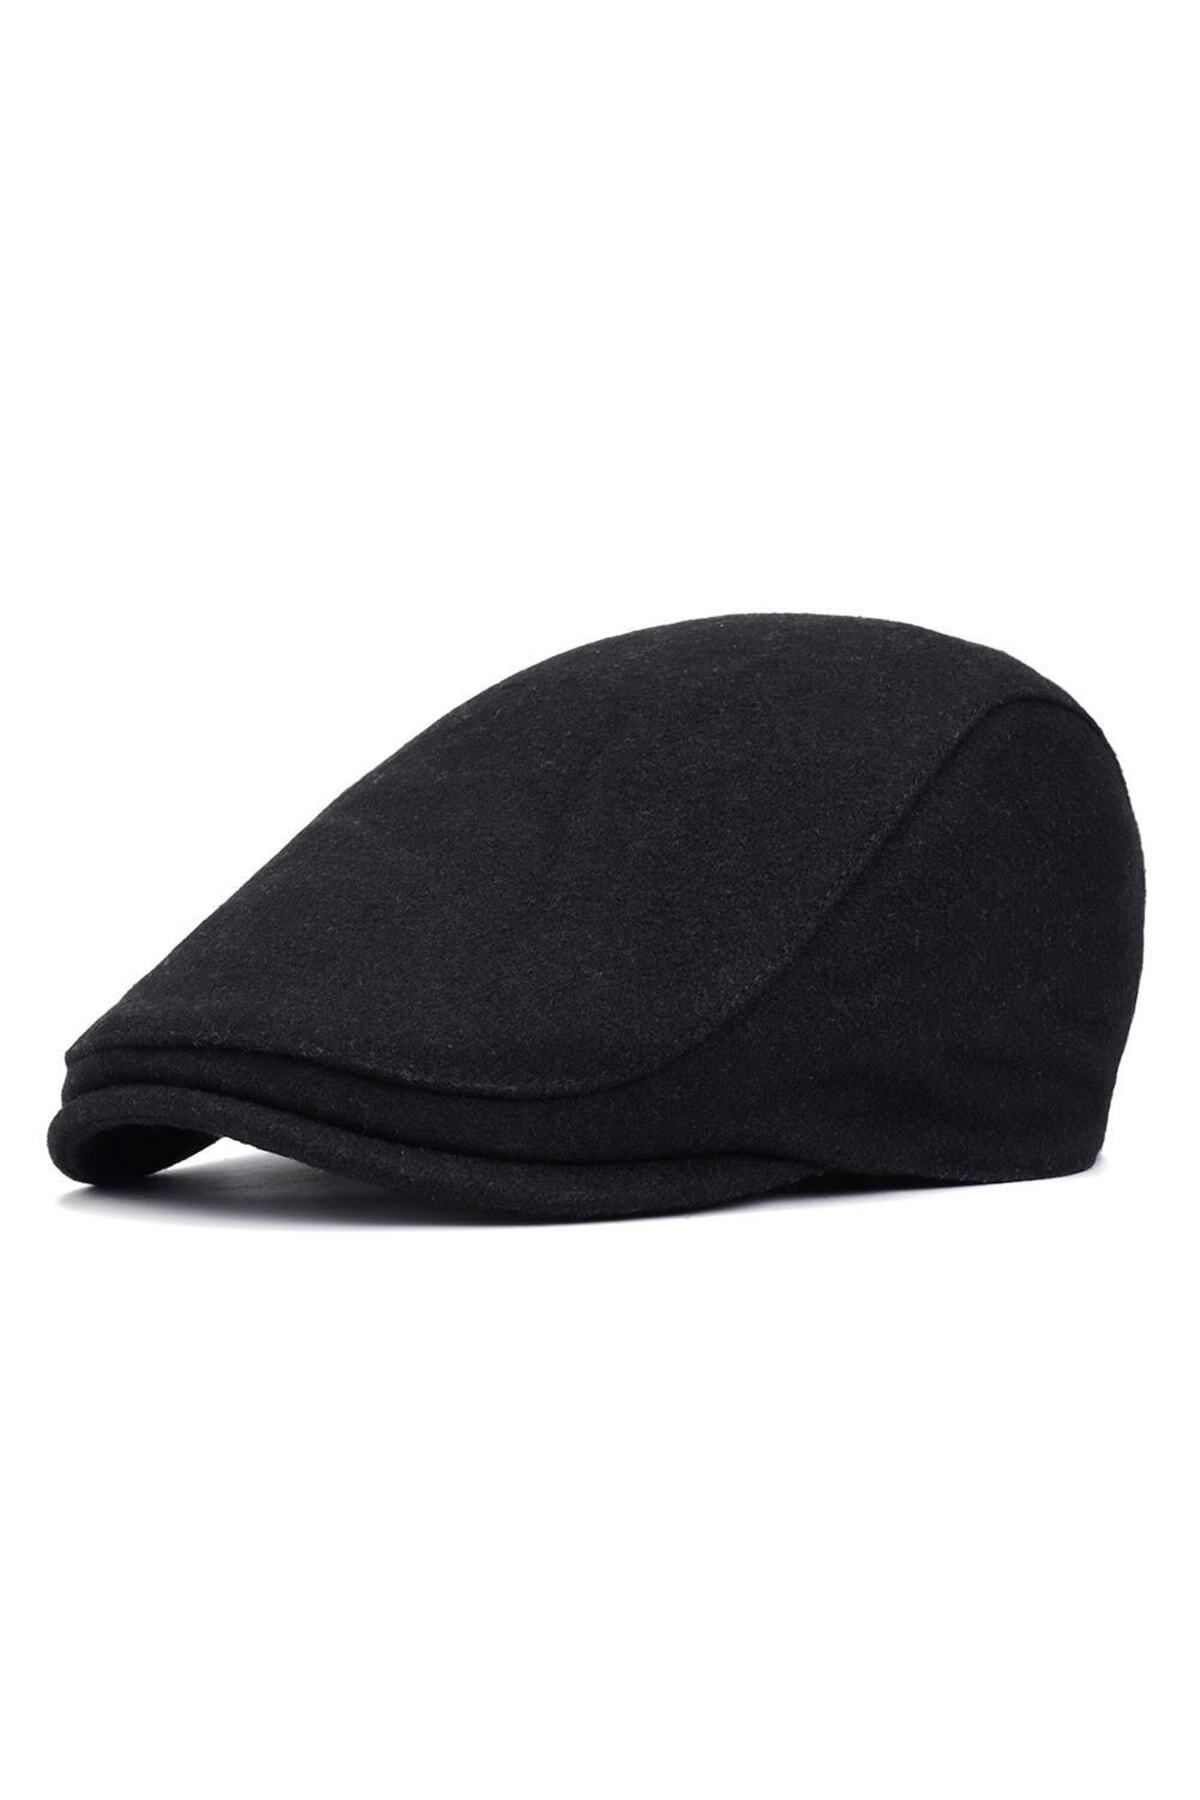 Rupen Kraft Kışlık Kaşe Kumaş Unisex Kasket Şapka Standart Beden